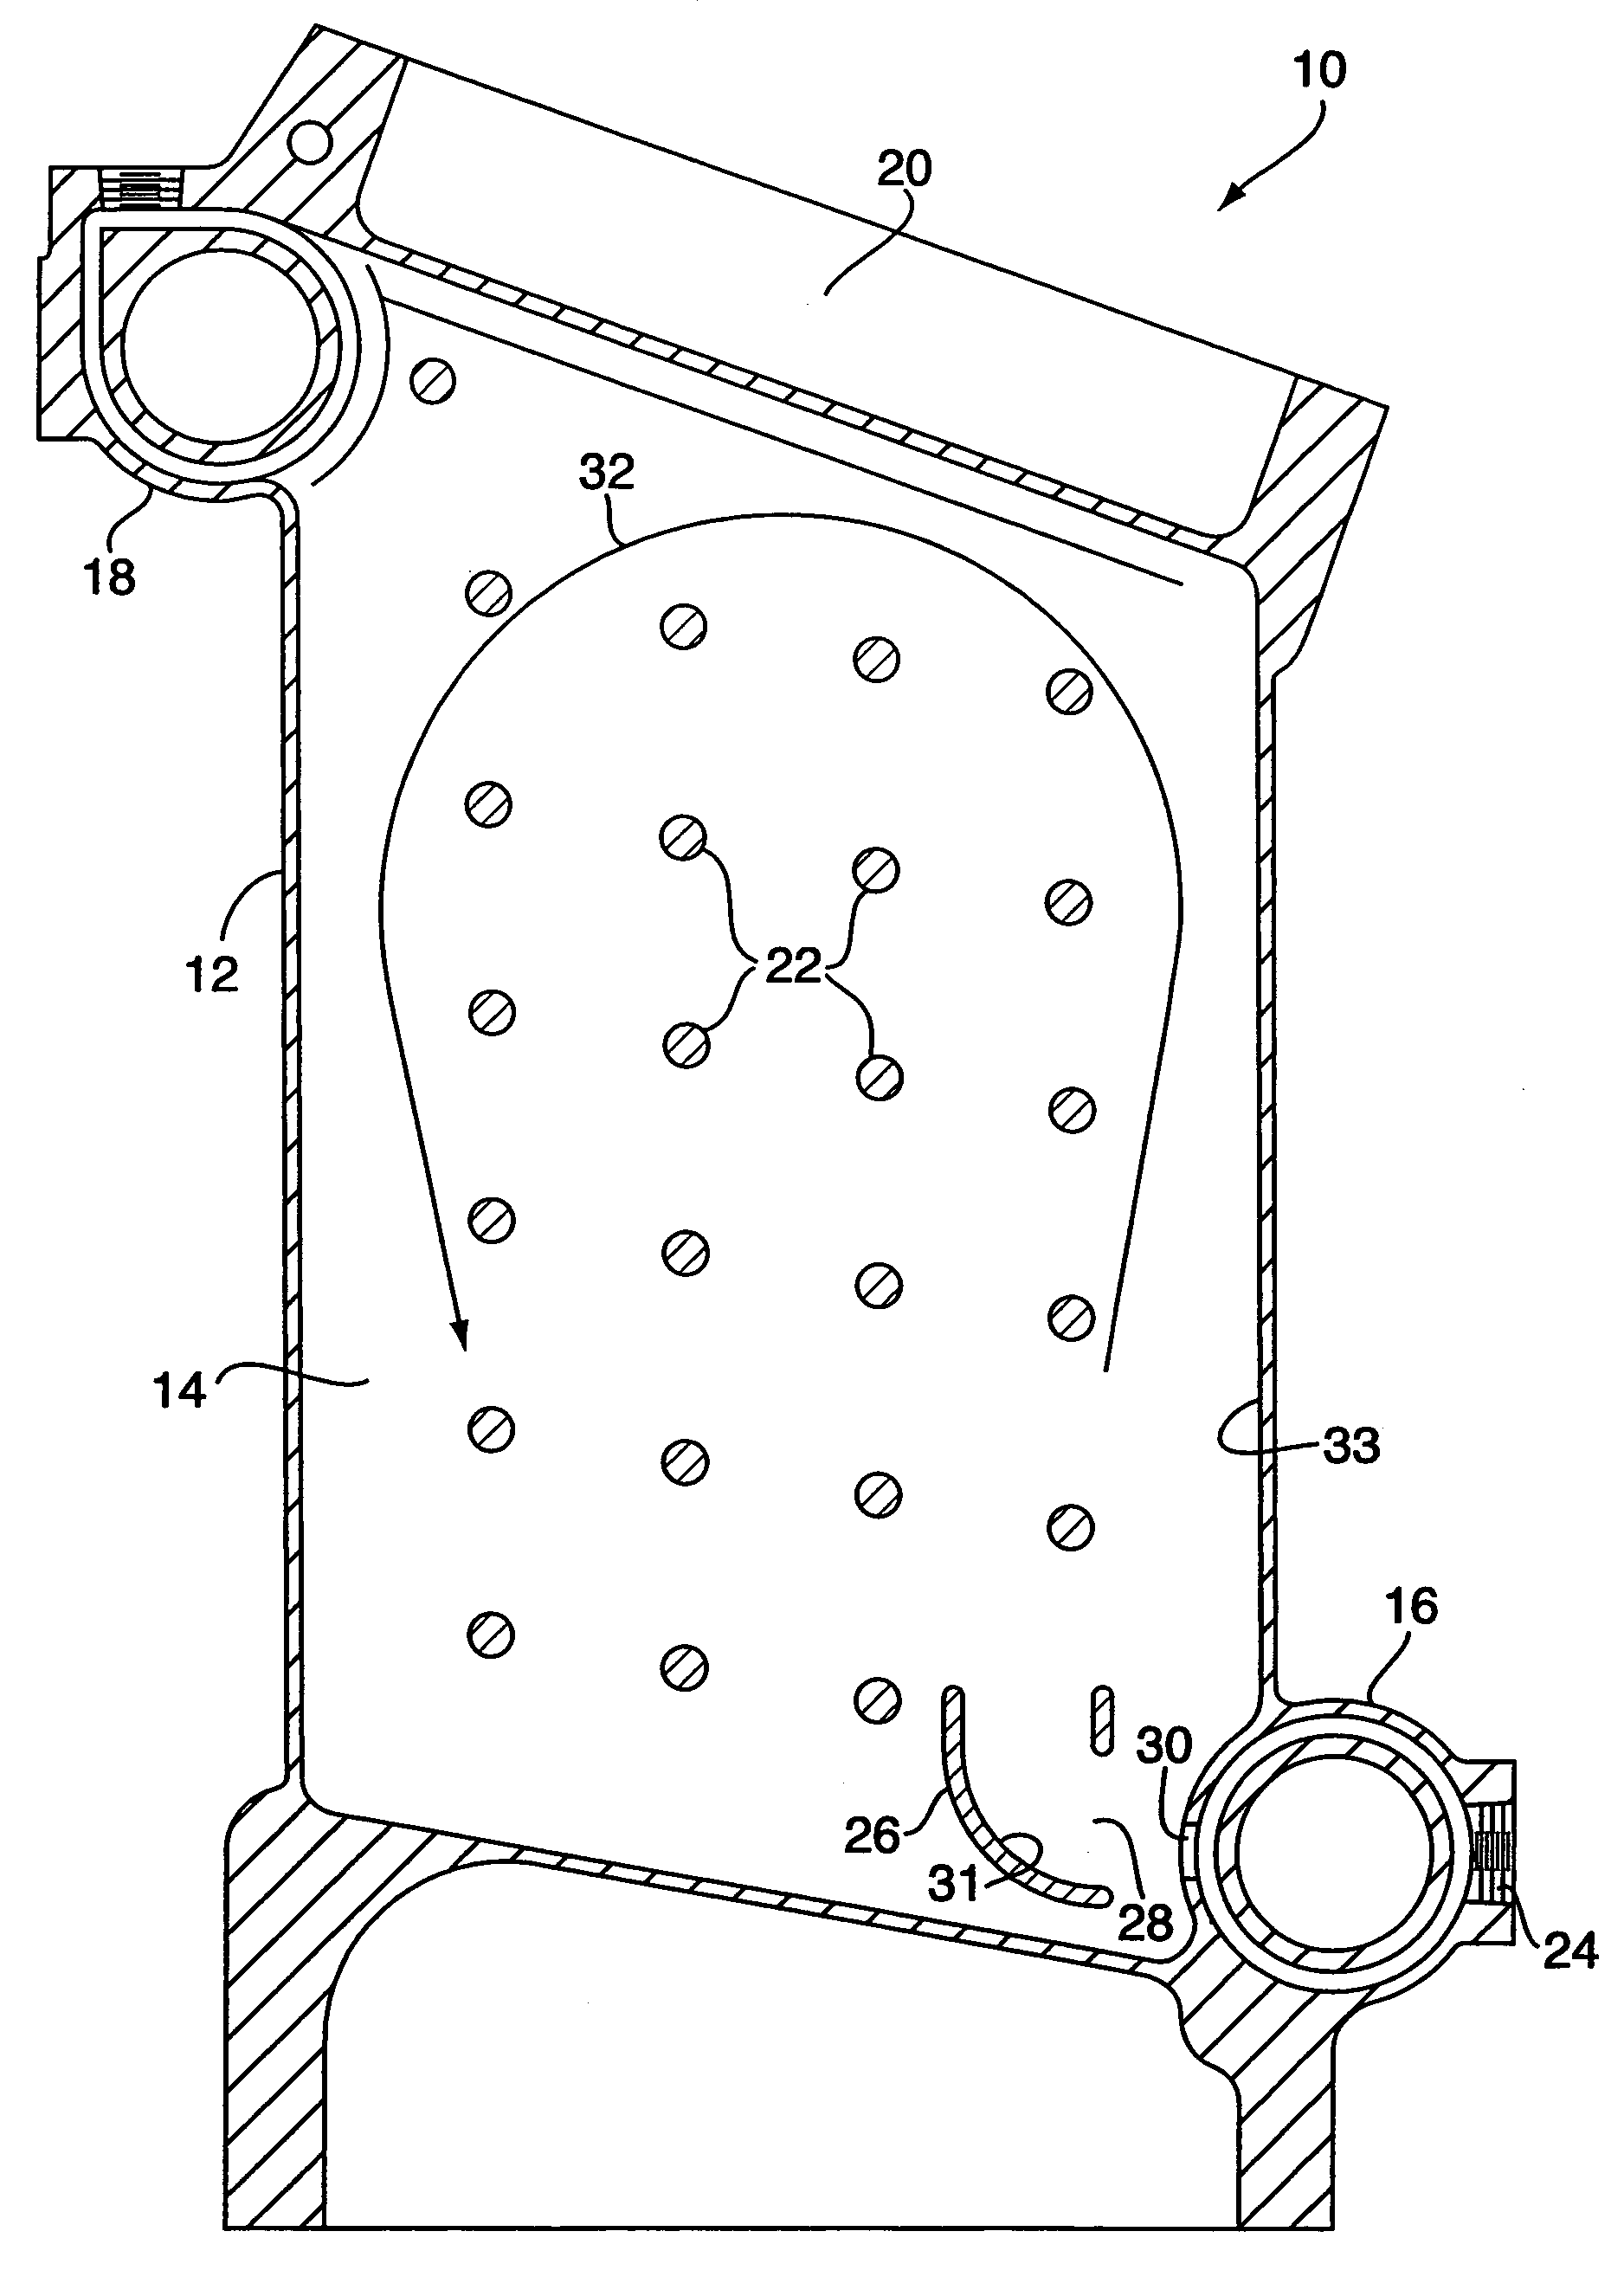 Boiler and burner apparatus